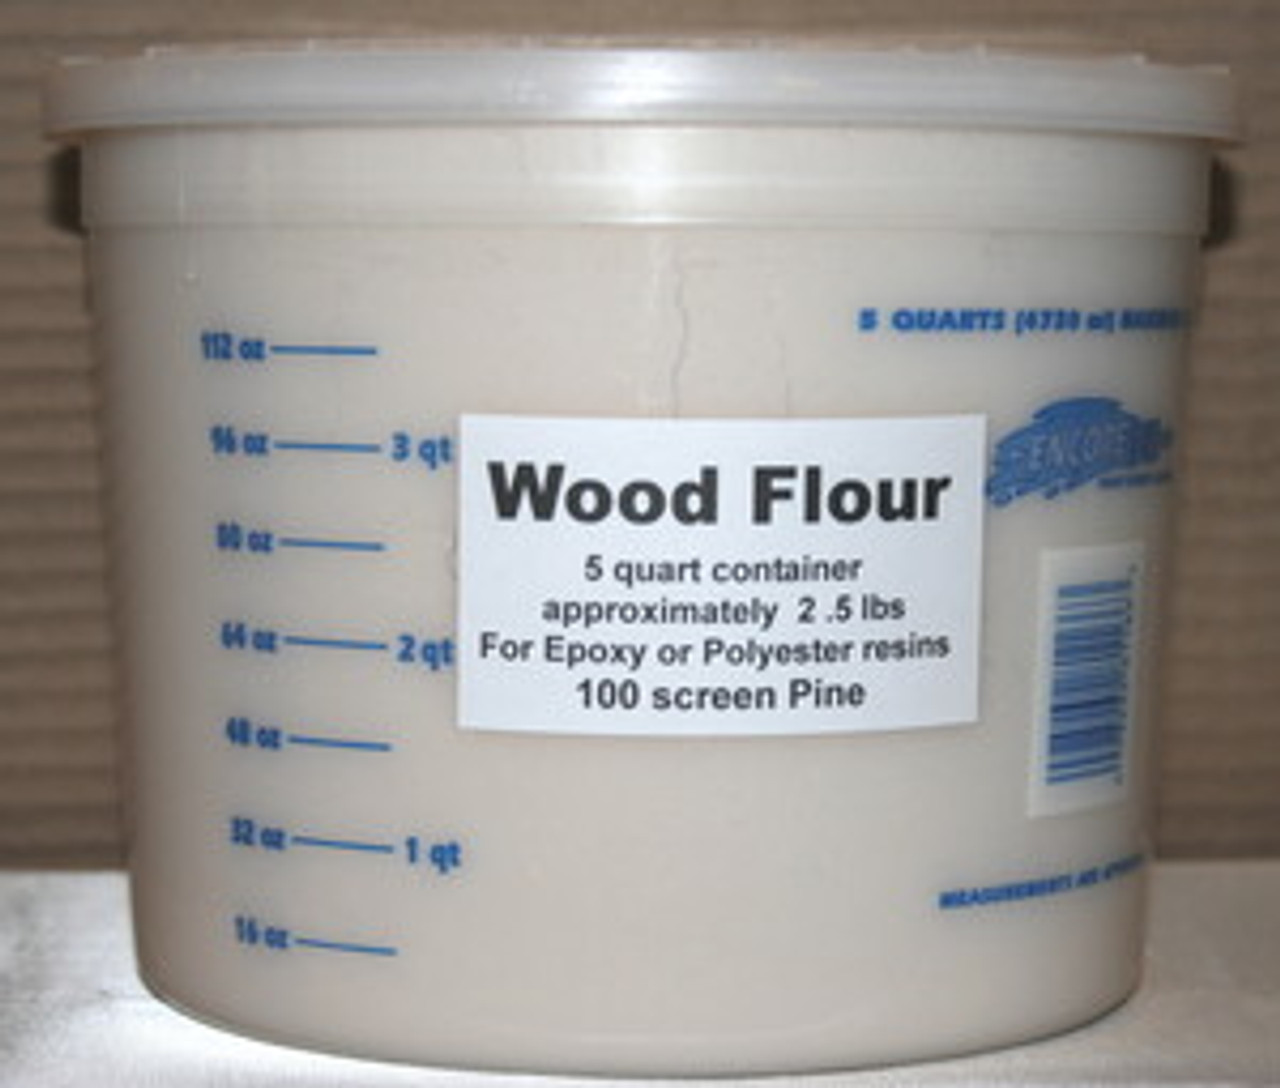 5 Lb Flour Container